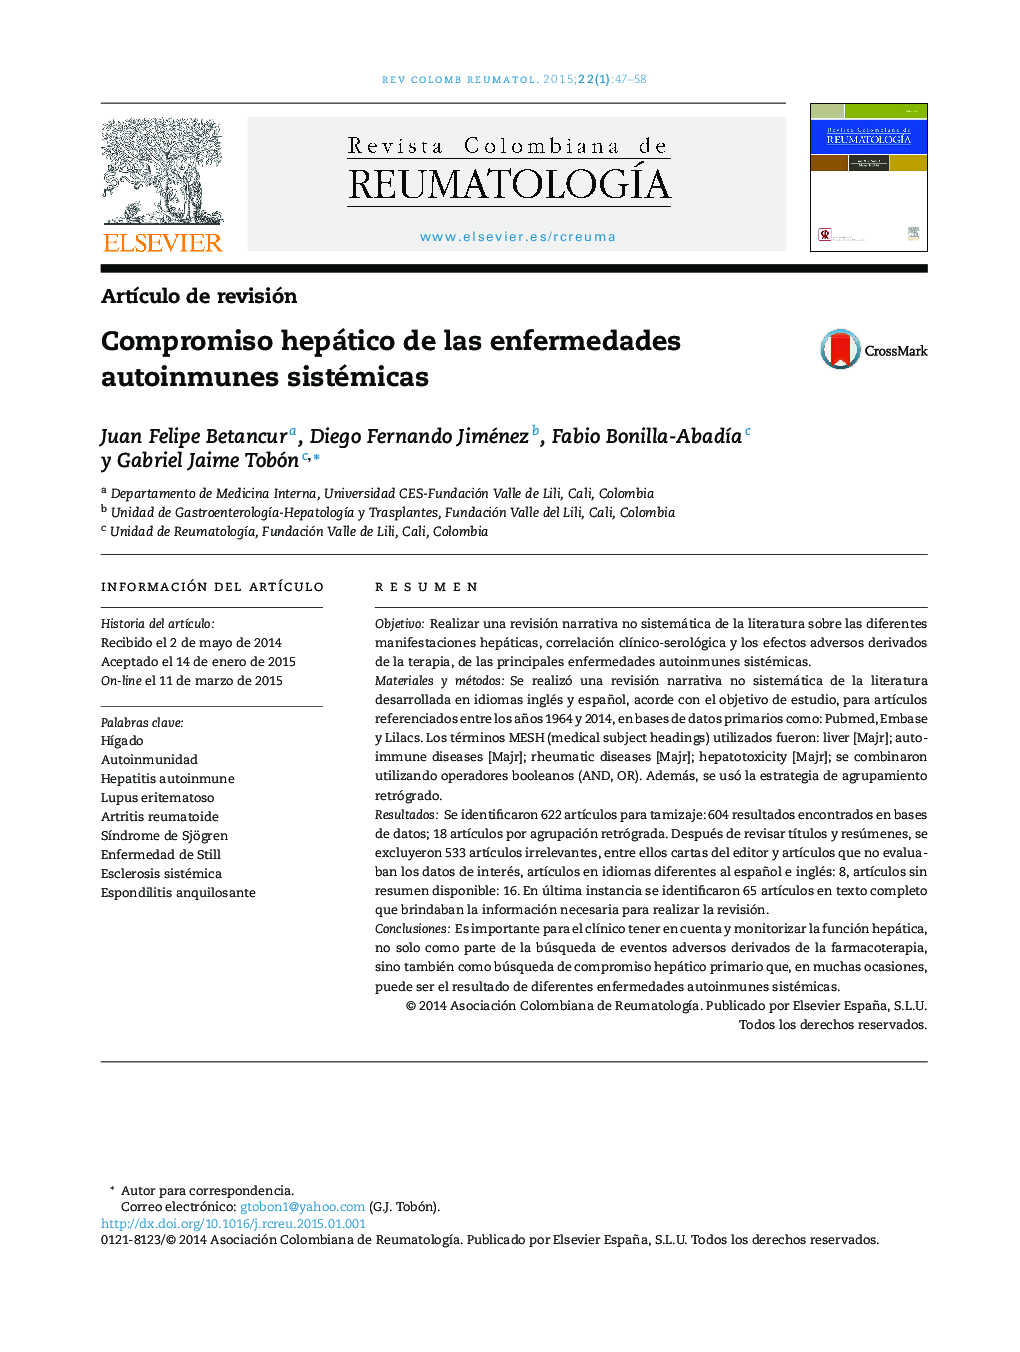 Compromiso hepático de las enfermedades autoinmunes sistémicas